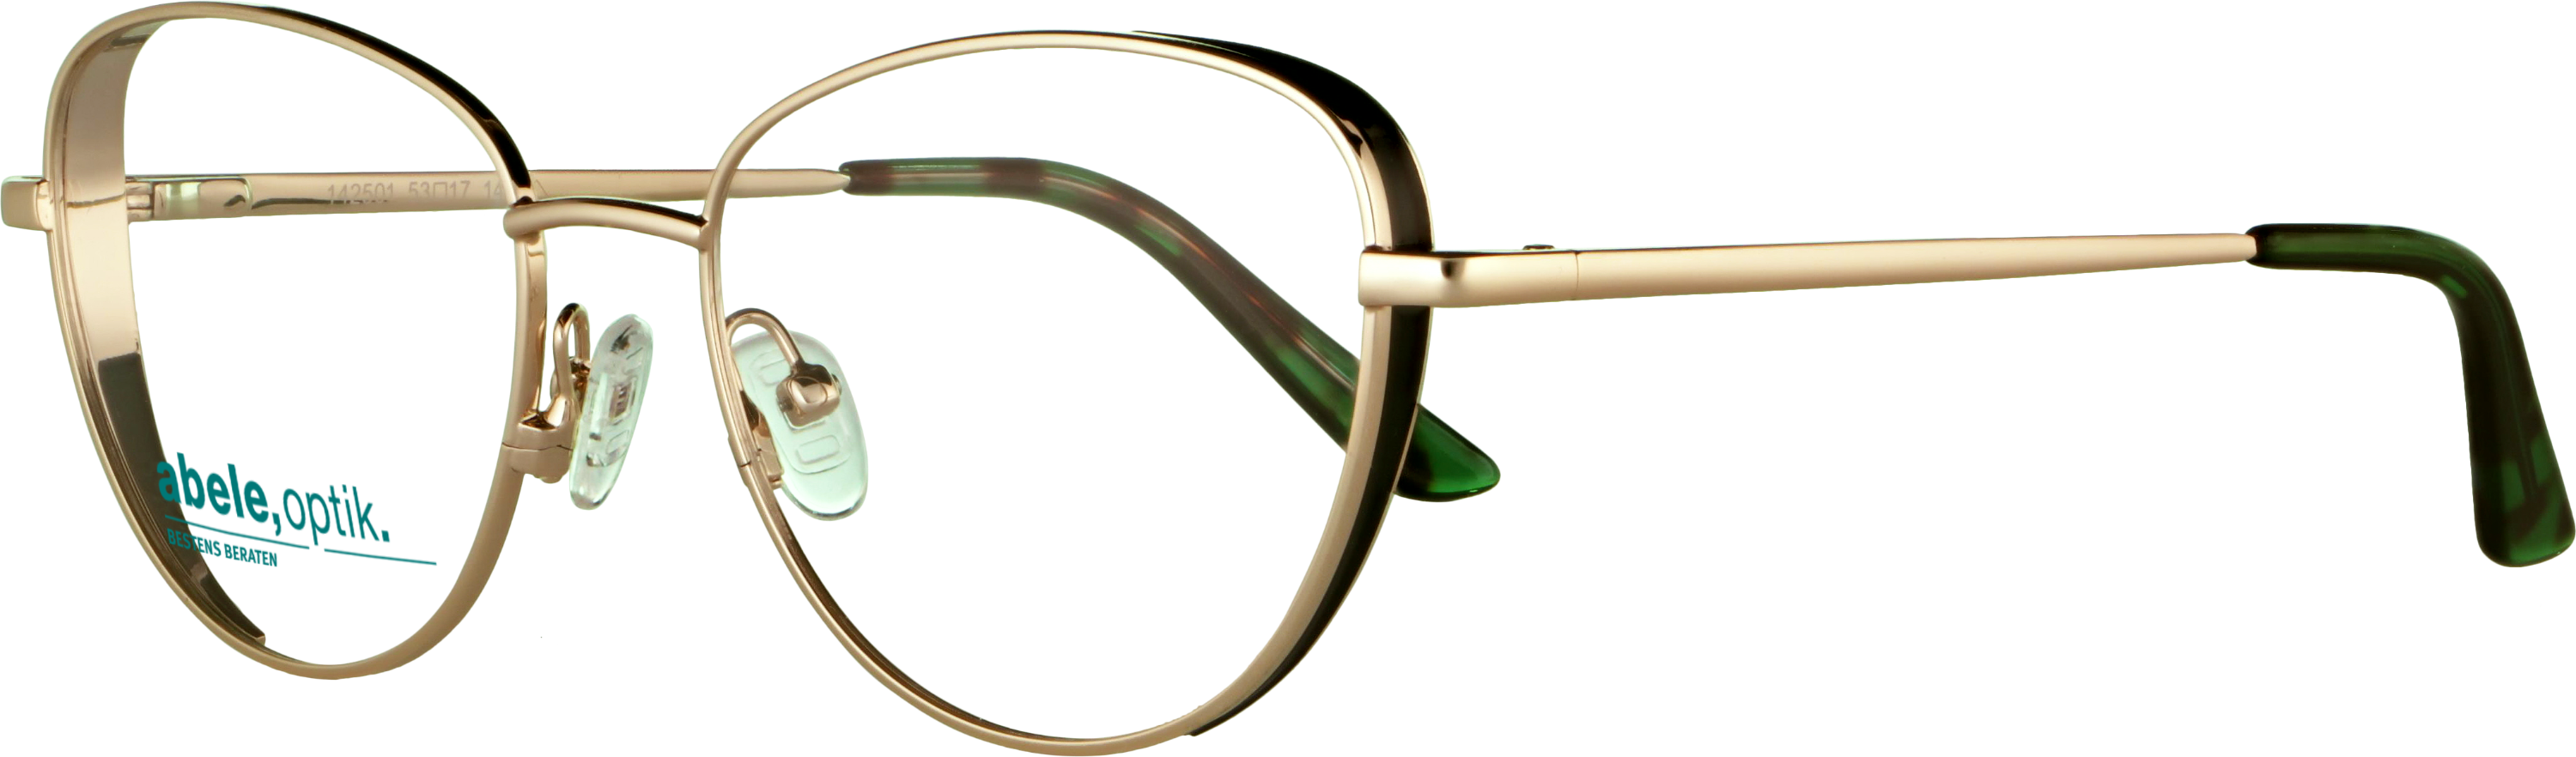 Das Bild zeigt die Korrektionsbrille 142501 von der Marke Abele Optik in gold.